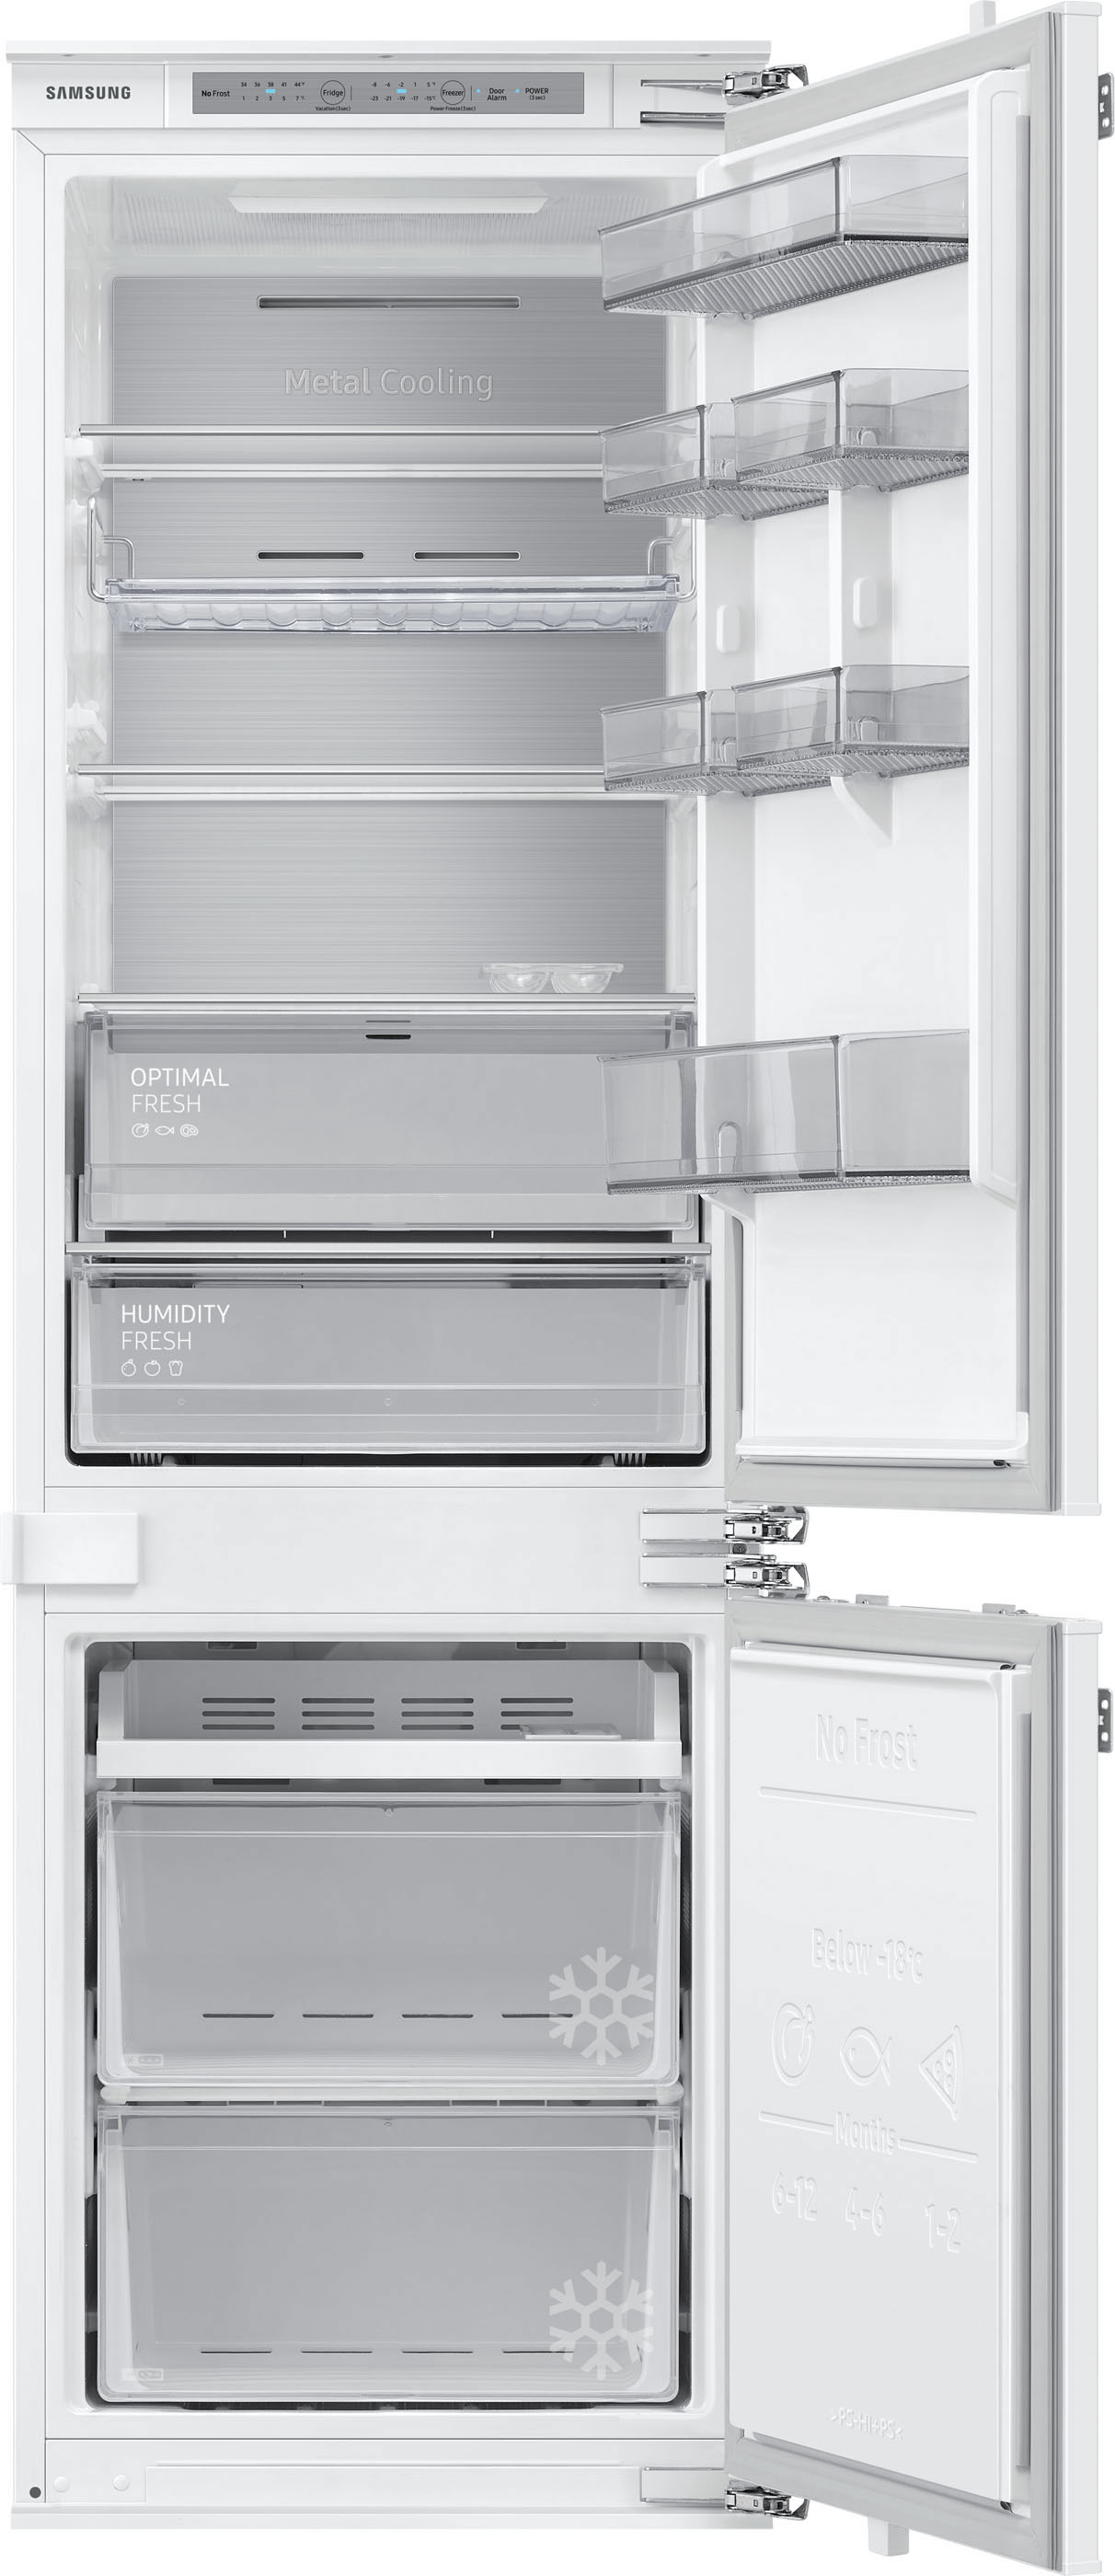 bestellen auf Samsung Kühlschränke Raten